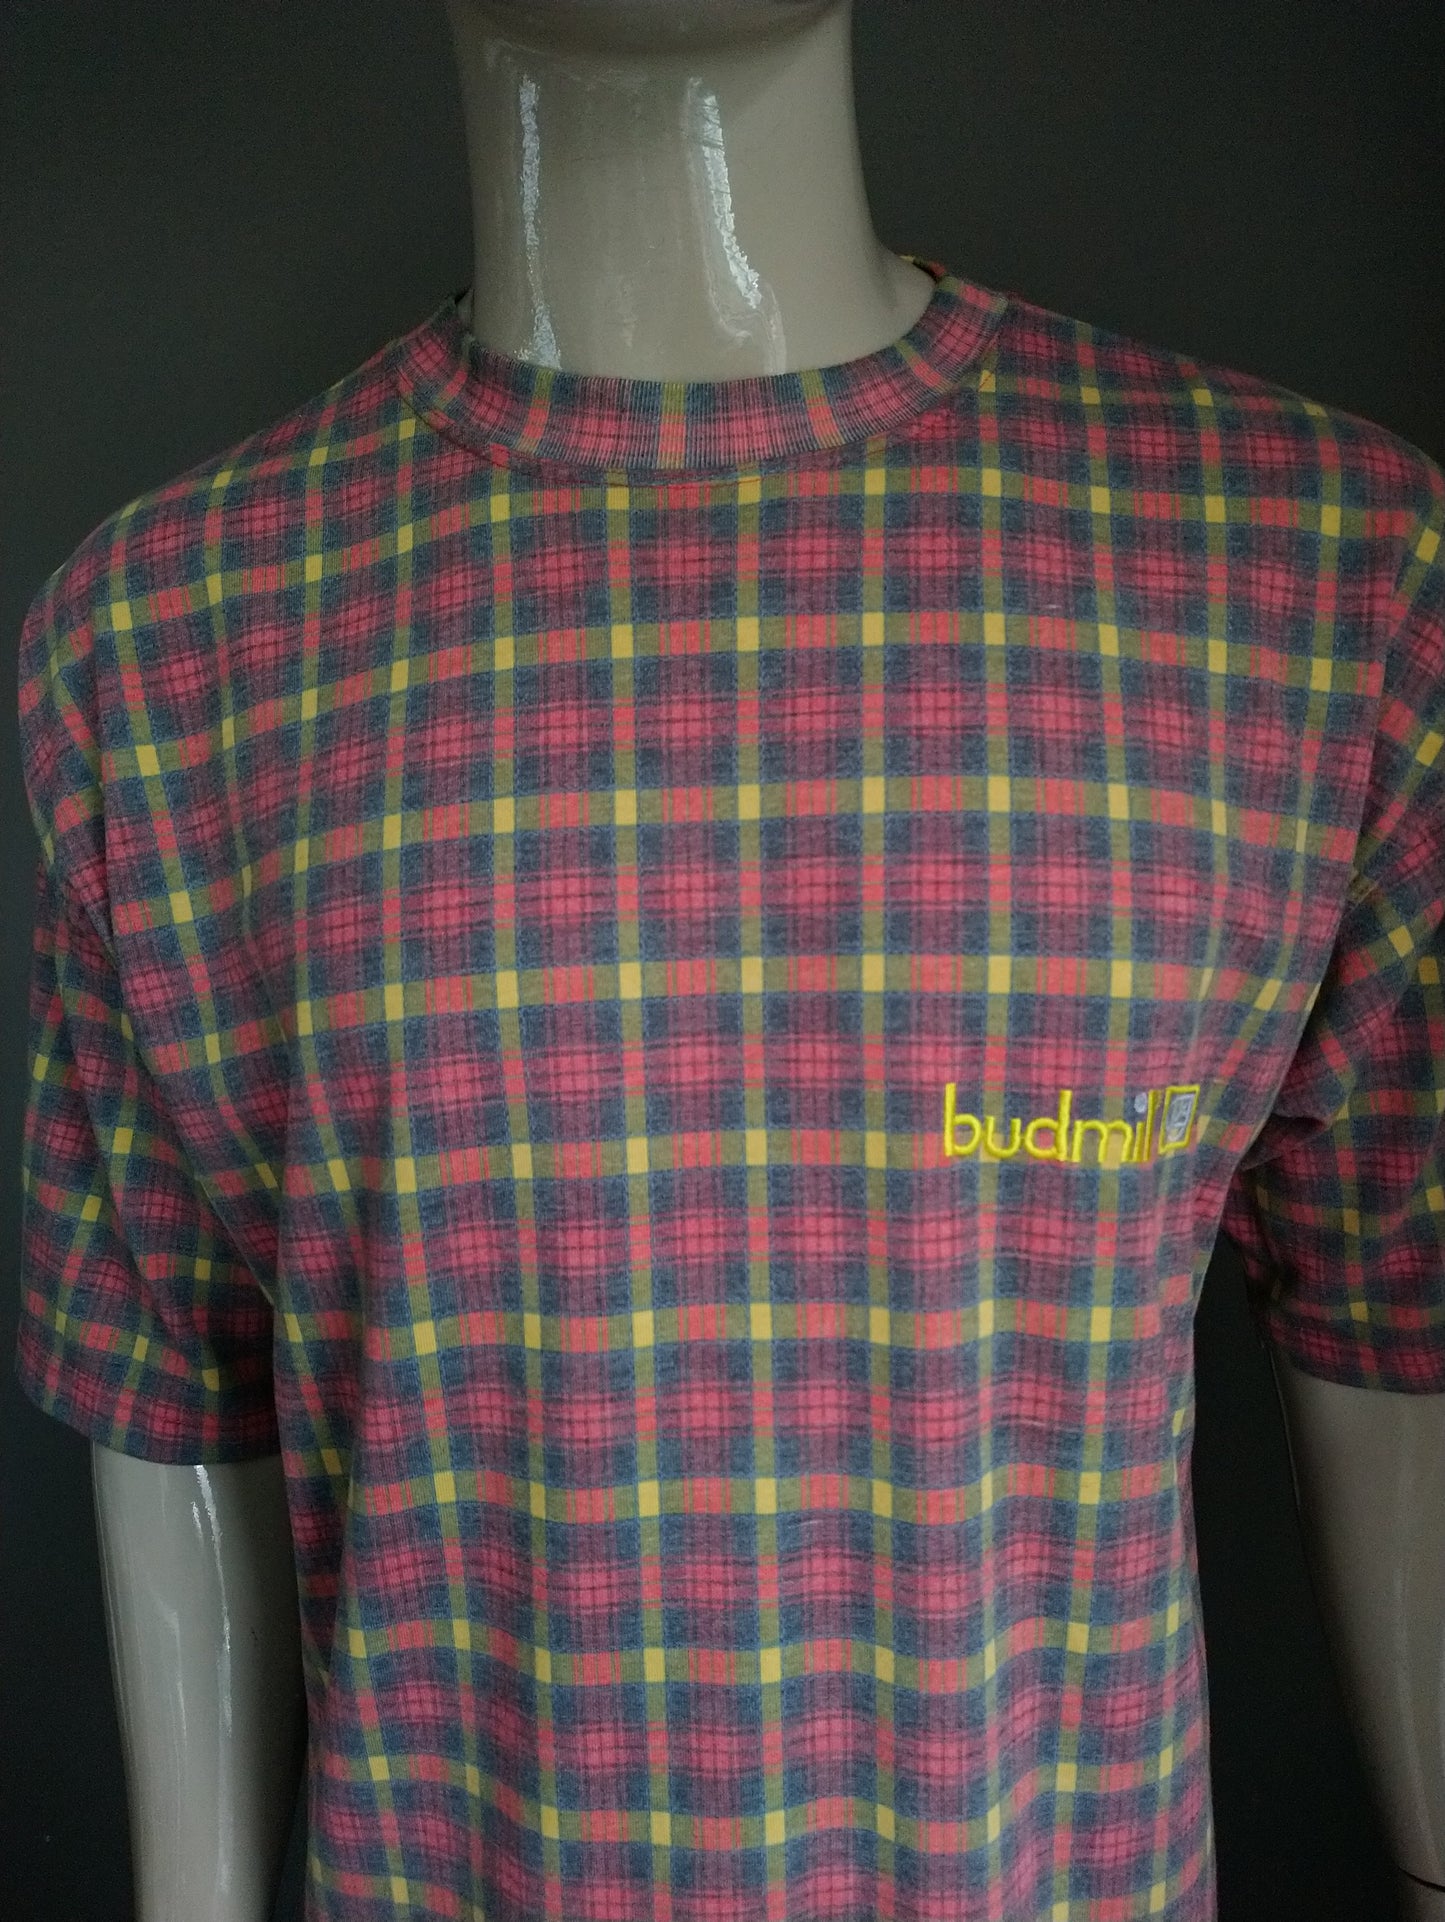 Camisa de Budmil vintage. Amarillo verde rojo a cuadros. Talla L.